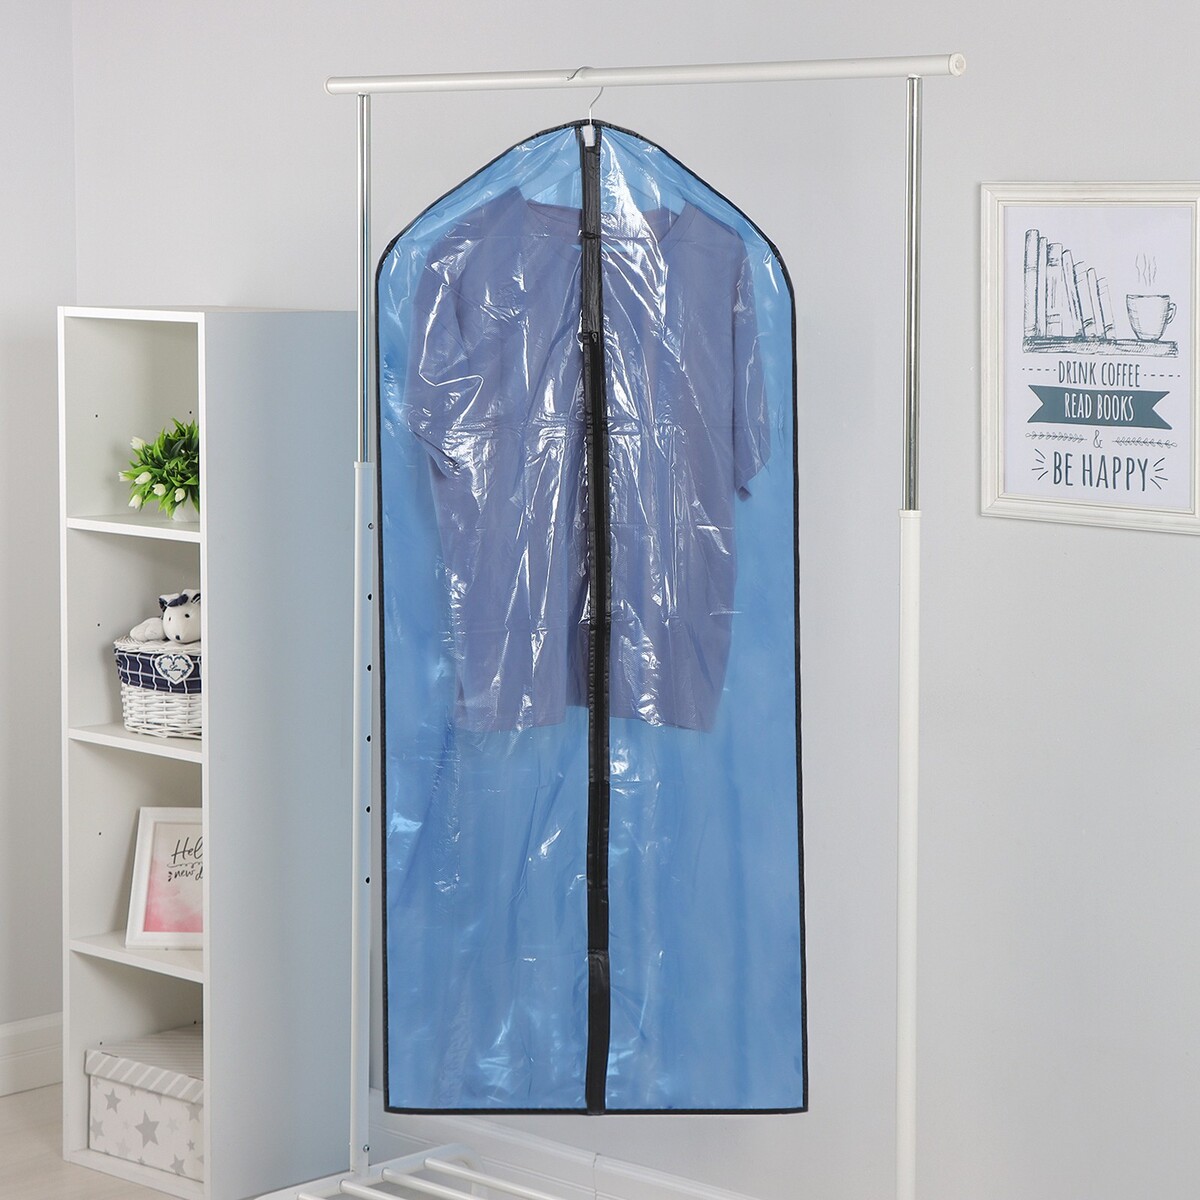 Чехол для одежды доляна, 60×137 см, полиэтилен, цвет синий прозрачный чехол для одежды доляна 60×137 см полиэтилен синий прозрачный